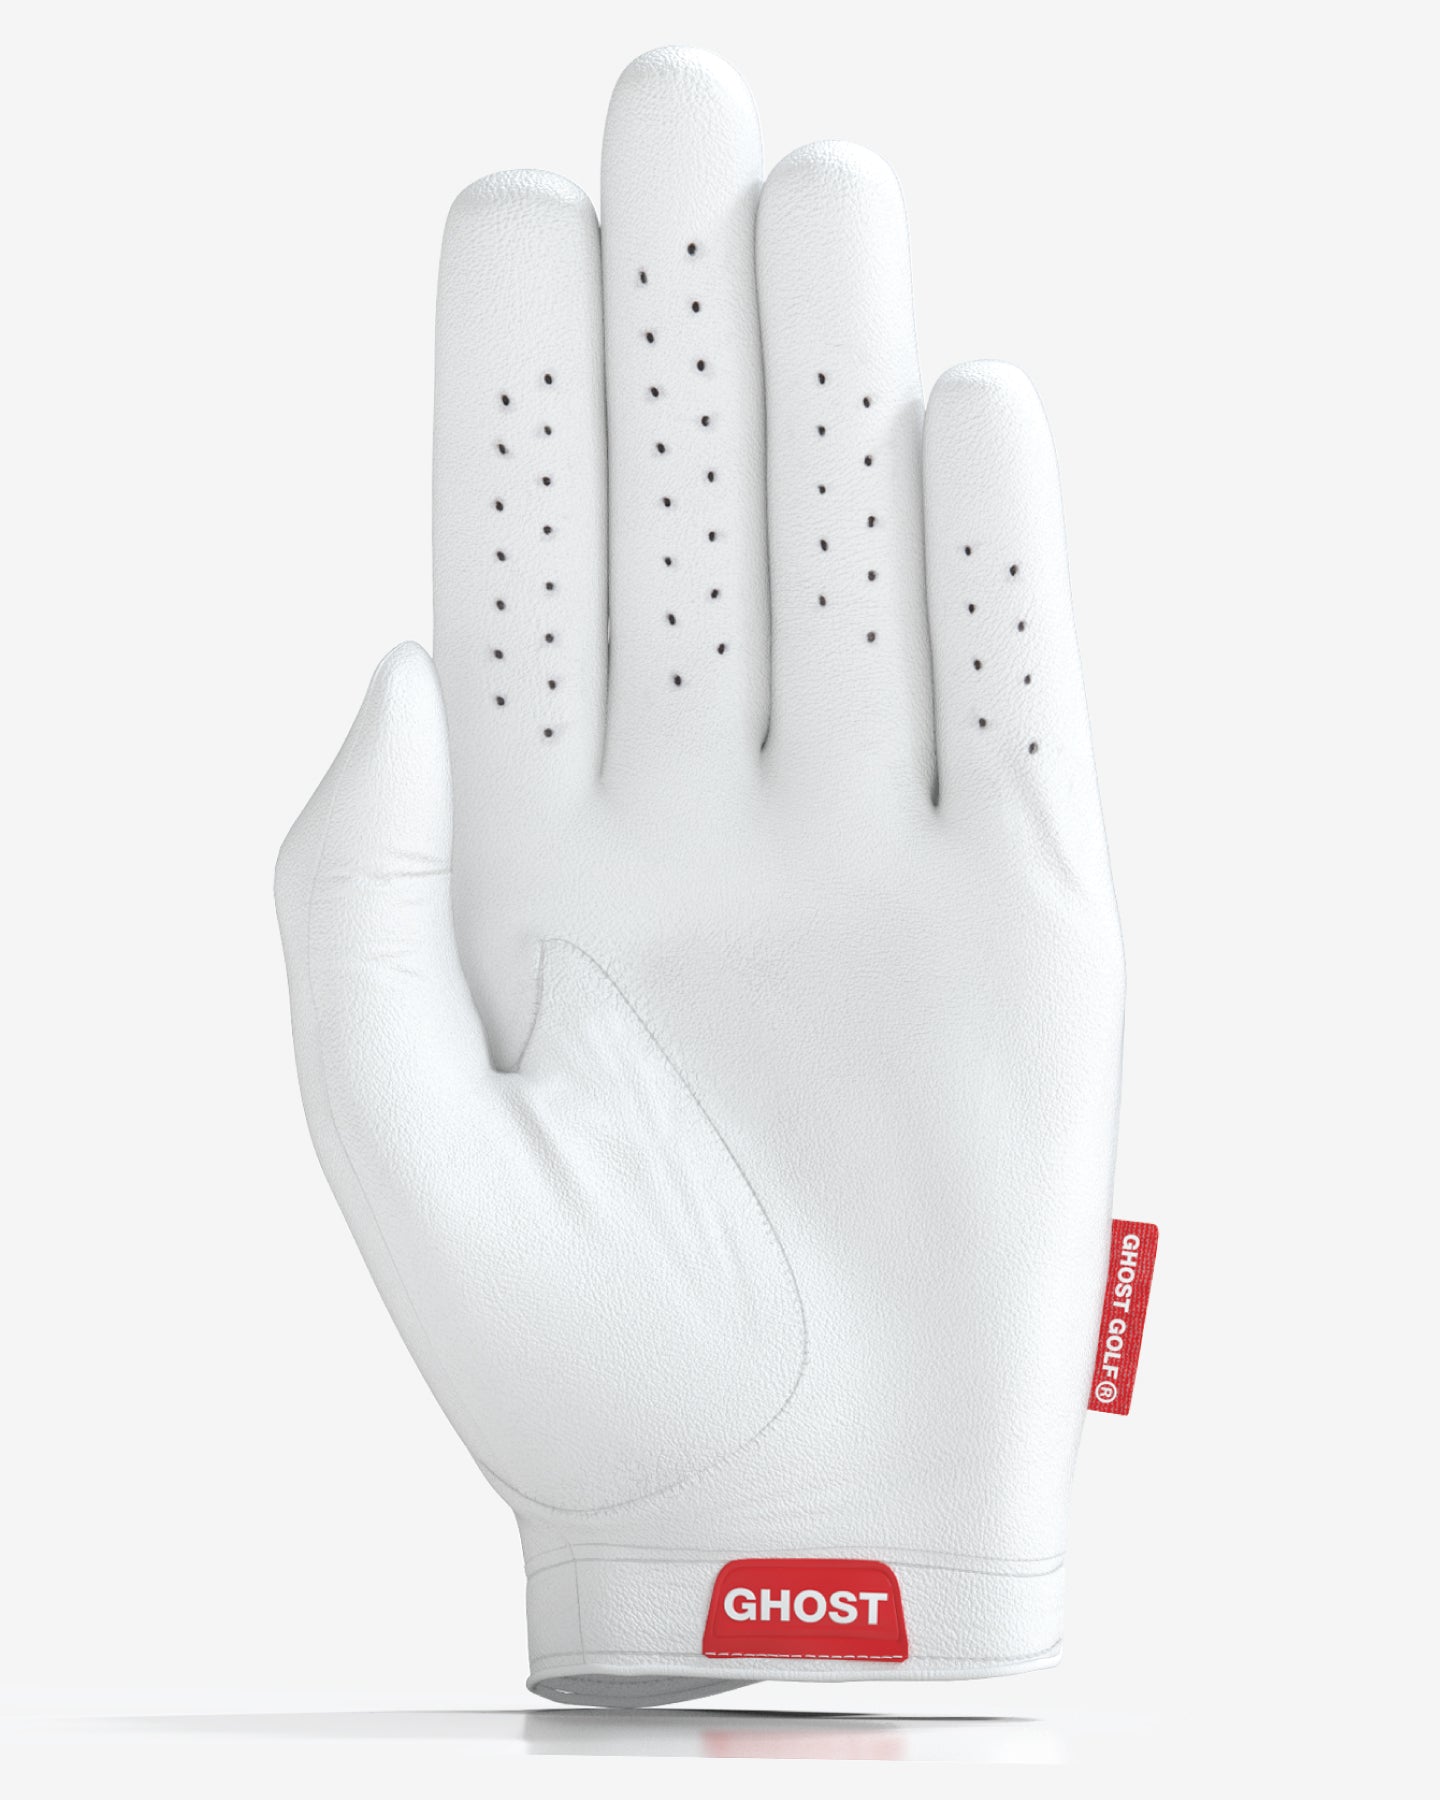 Ghost Left Hand Glove, White